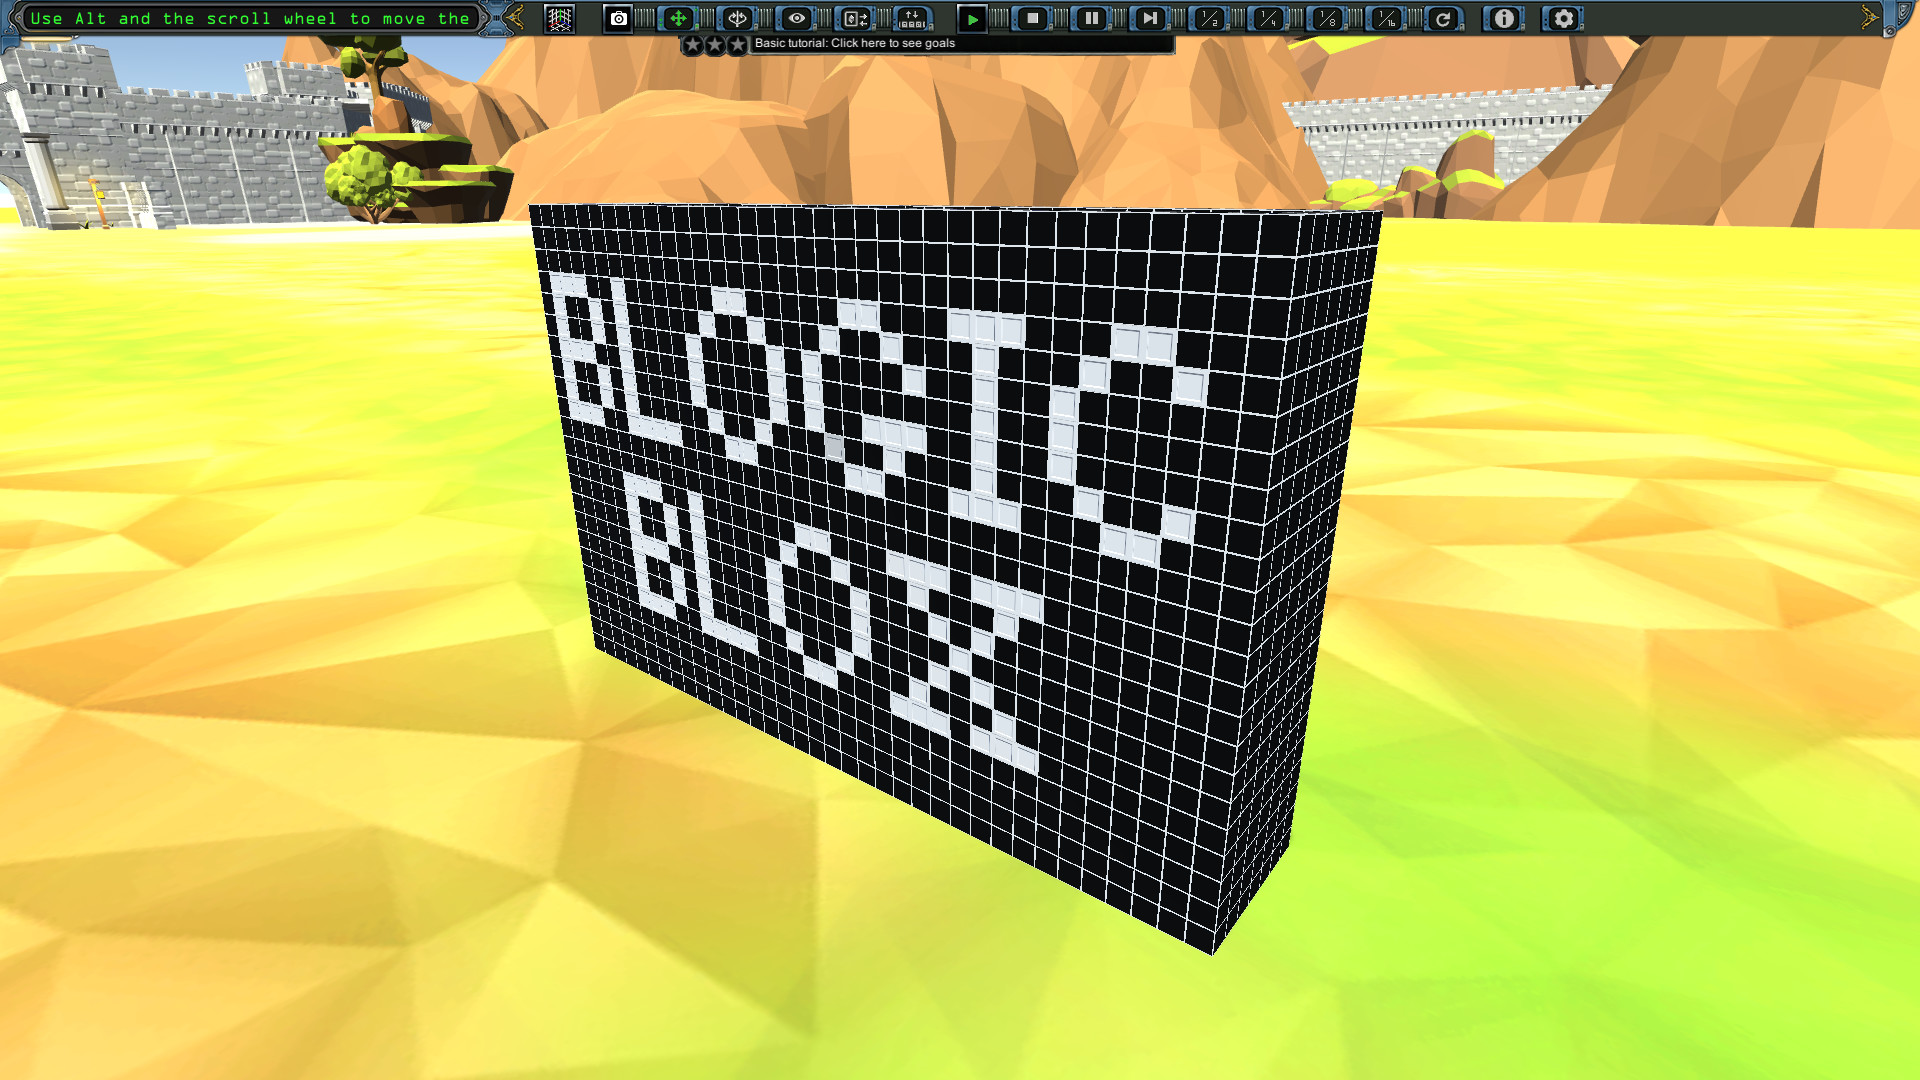 bLogic Blox Free Download